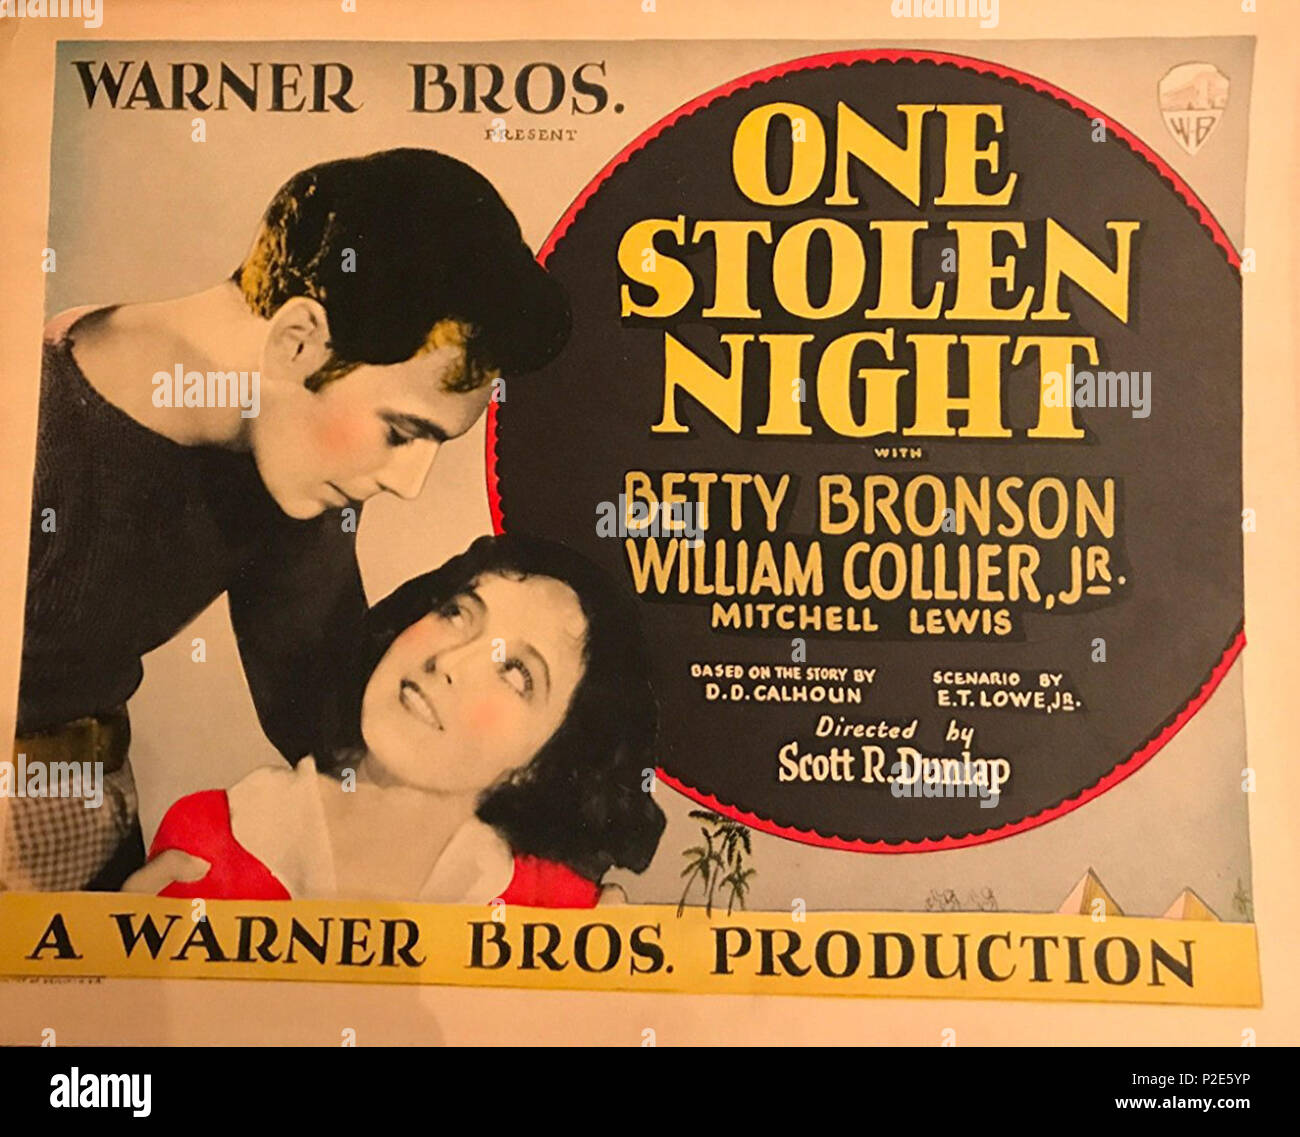 . Englisch: Dies ist eine Lobby card der American Adventure crime Film 1929 eine gestohlene Nacht. 1929. Warner Bros. Gestohlen 38 Eine Nacht (1929) Lobby card Stockfoto